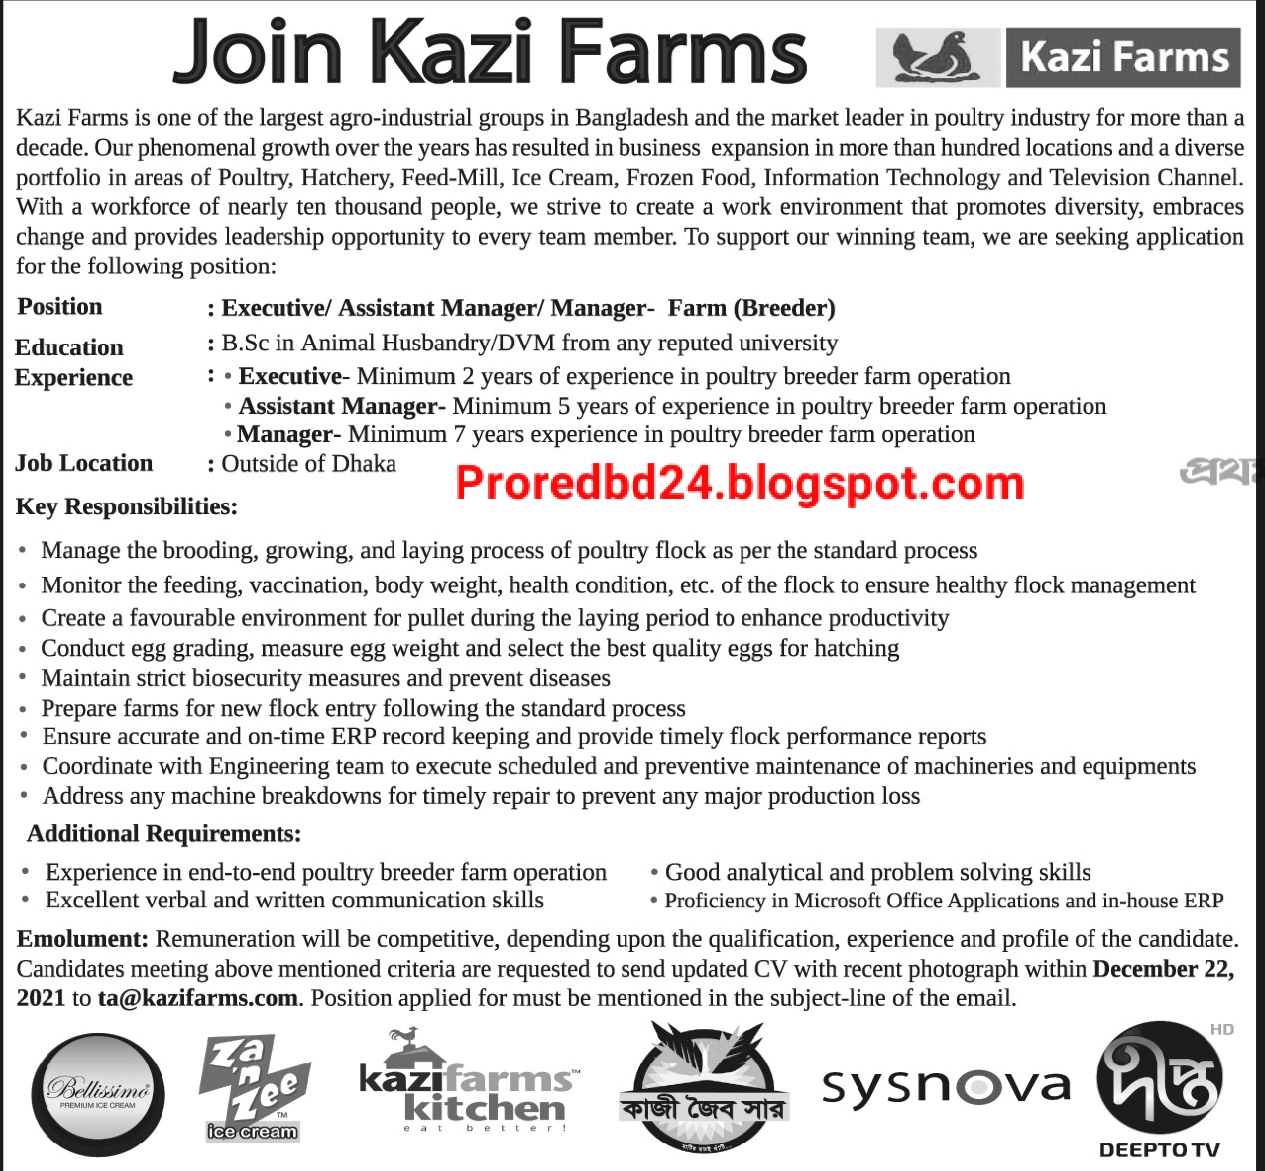 কাজী ফার্মস গ্রুপে নিয়োগ বিজ্ঞপ্তি ২০২২ - Kazi farms group job circular 2022 - kazifarms.com